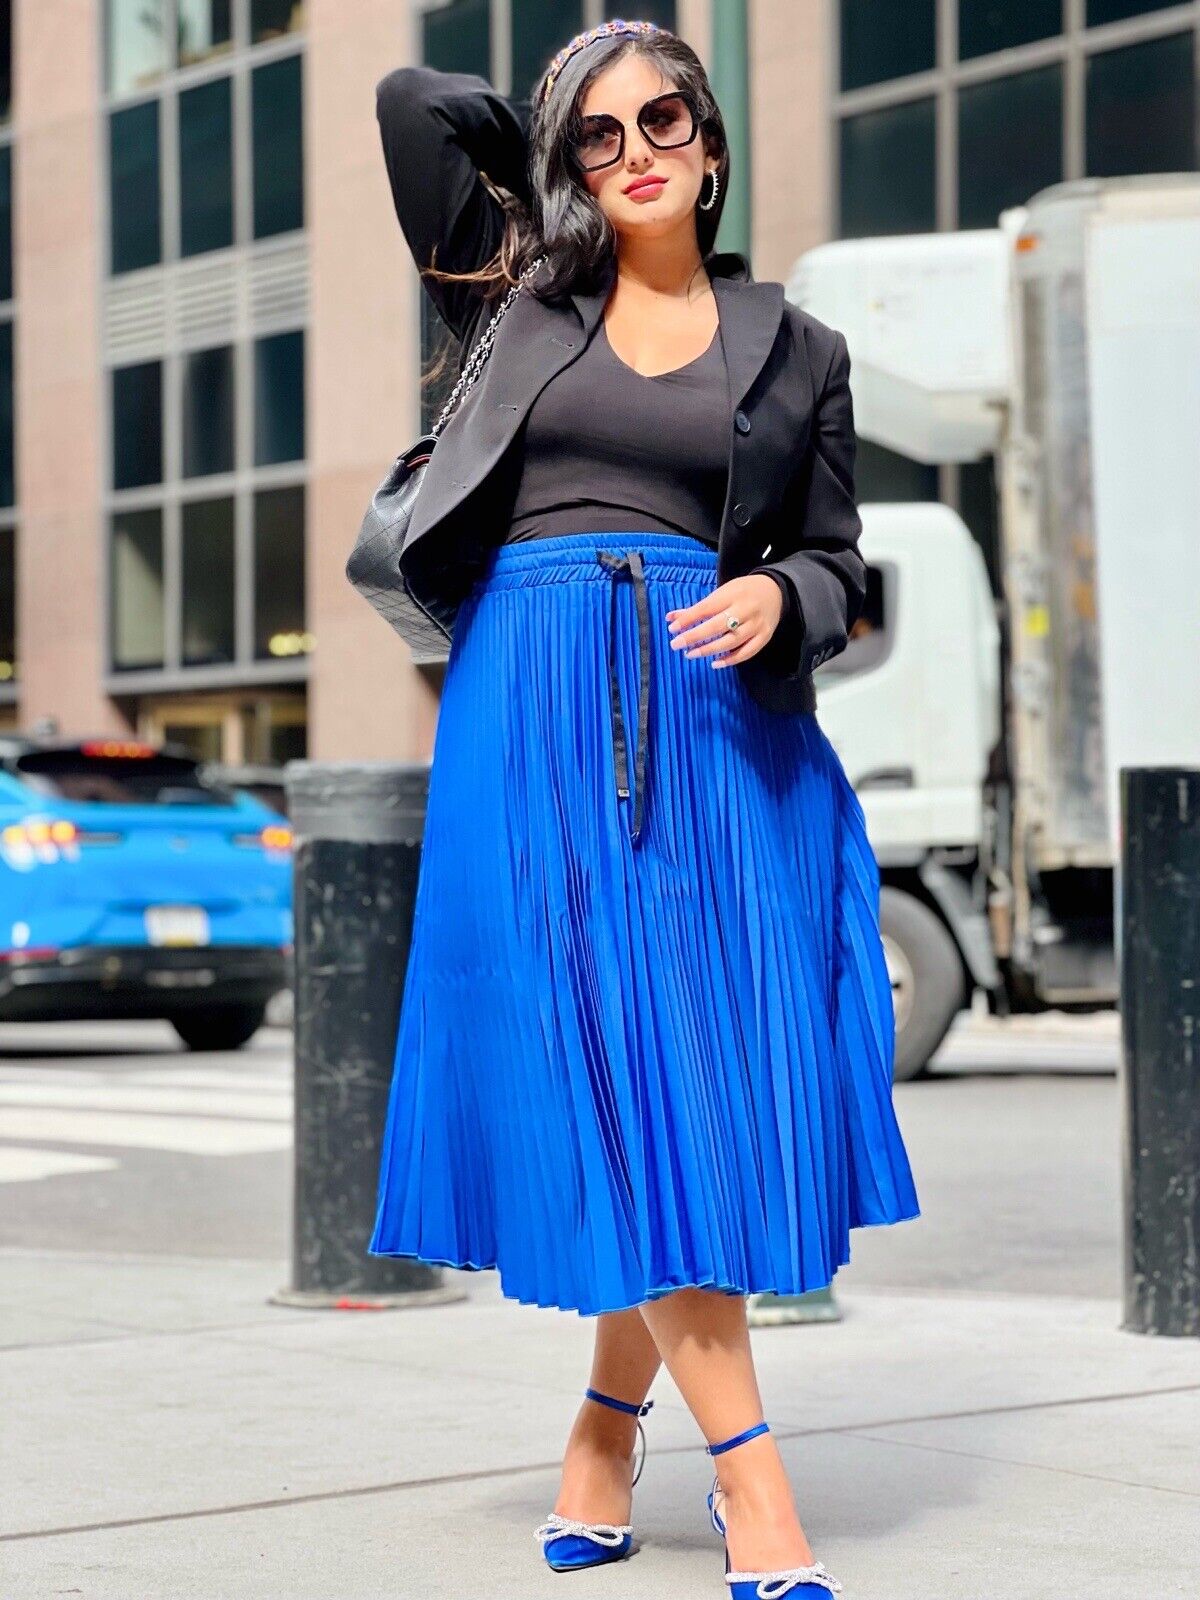 Luxurious Pleated midi satin blue skirt for Women elegant skirt - Brand new Unbranded